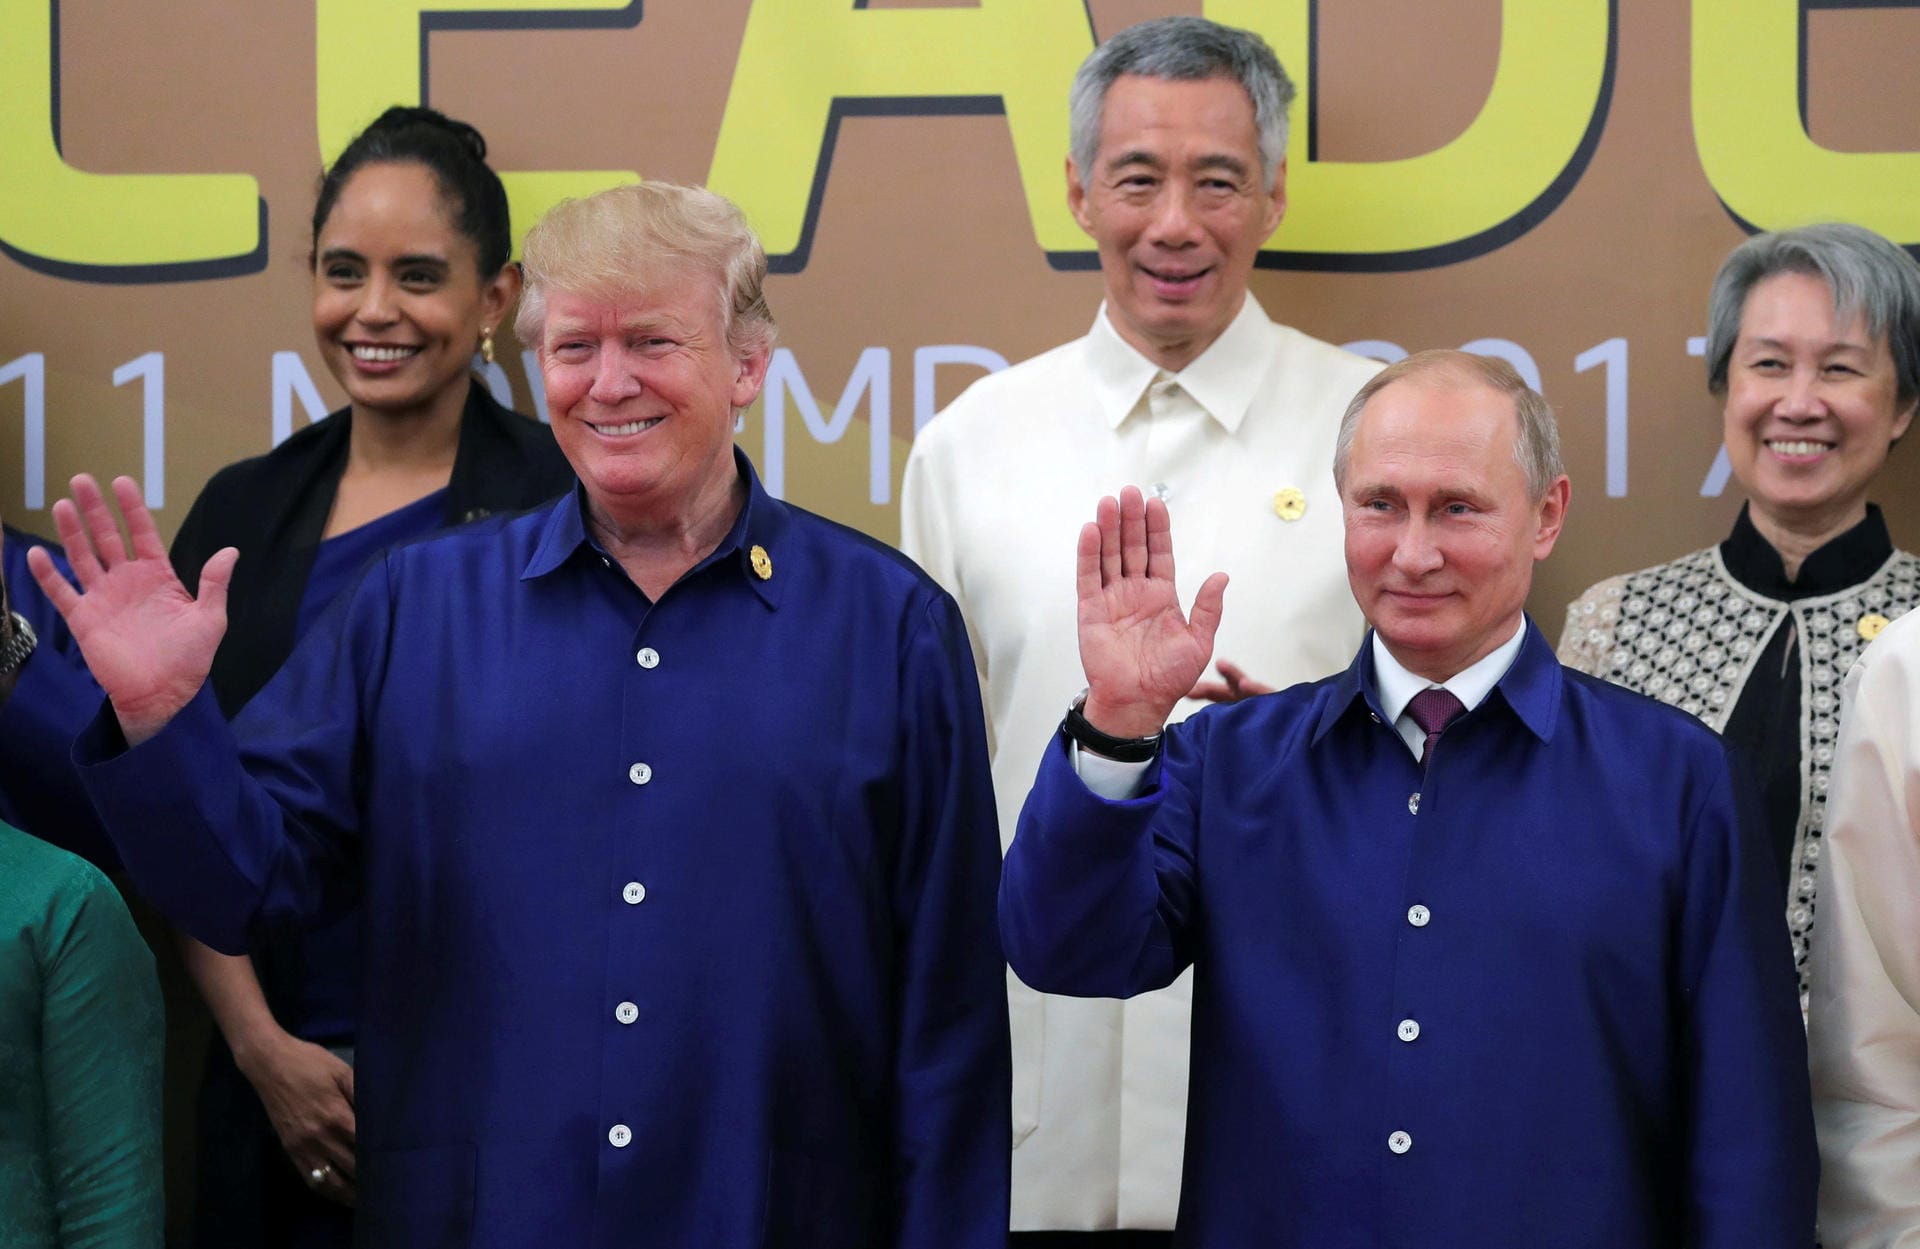 Generell verbindet die beiden Präsidenten aber offenbar einiges – zum Beispiel dieses Hemd. Sie werden sich gut verstehen.